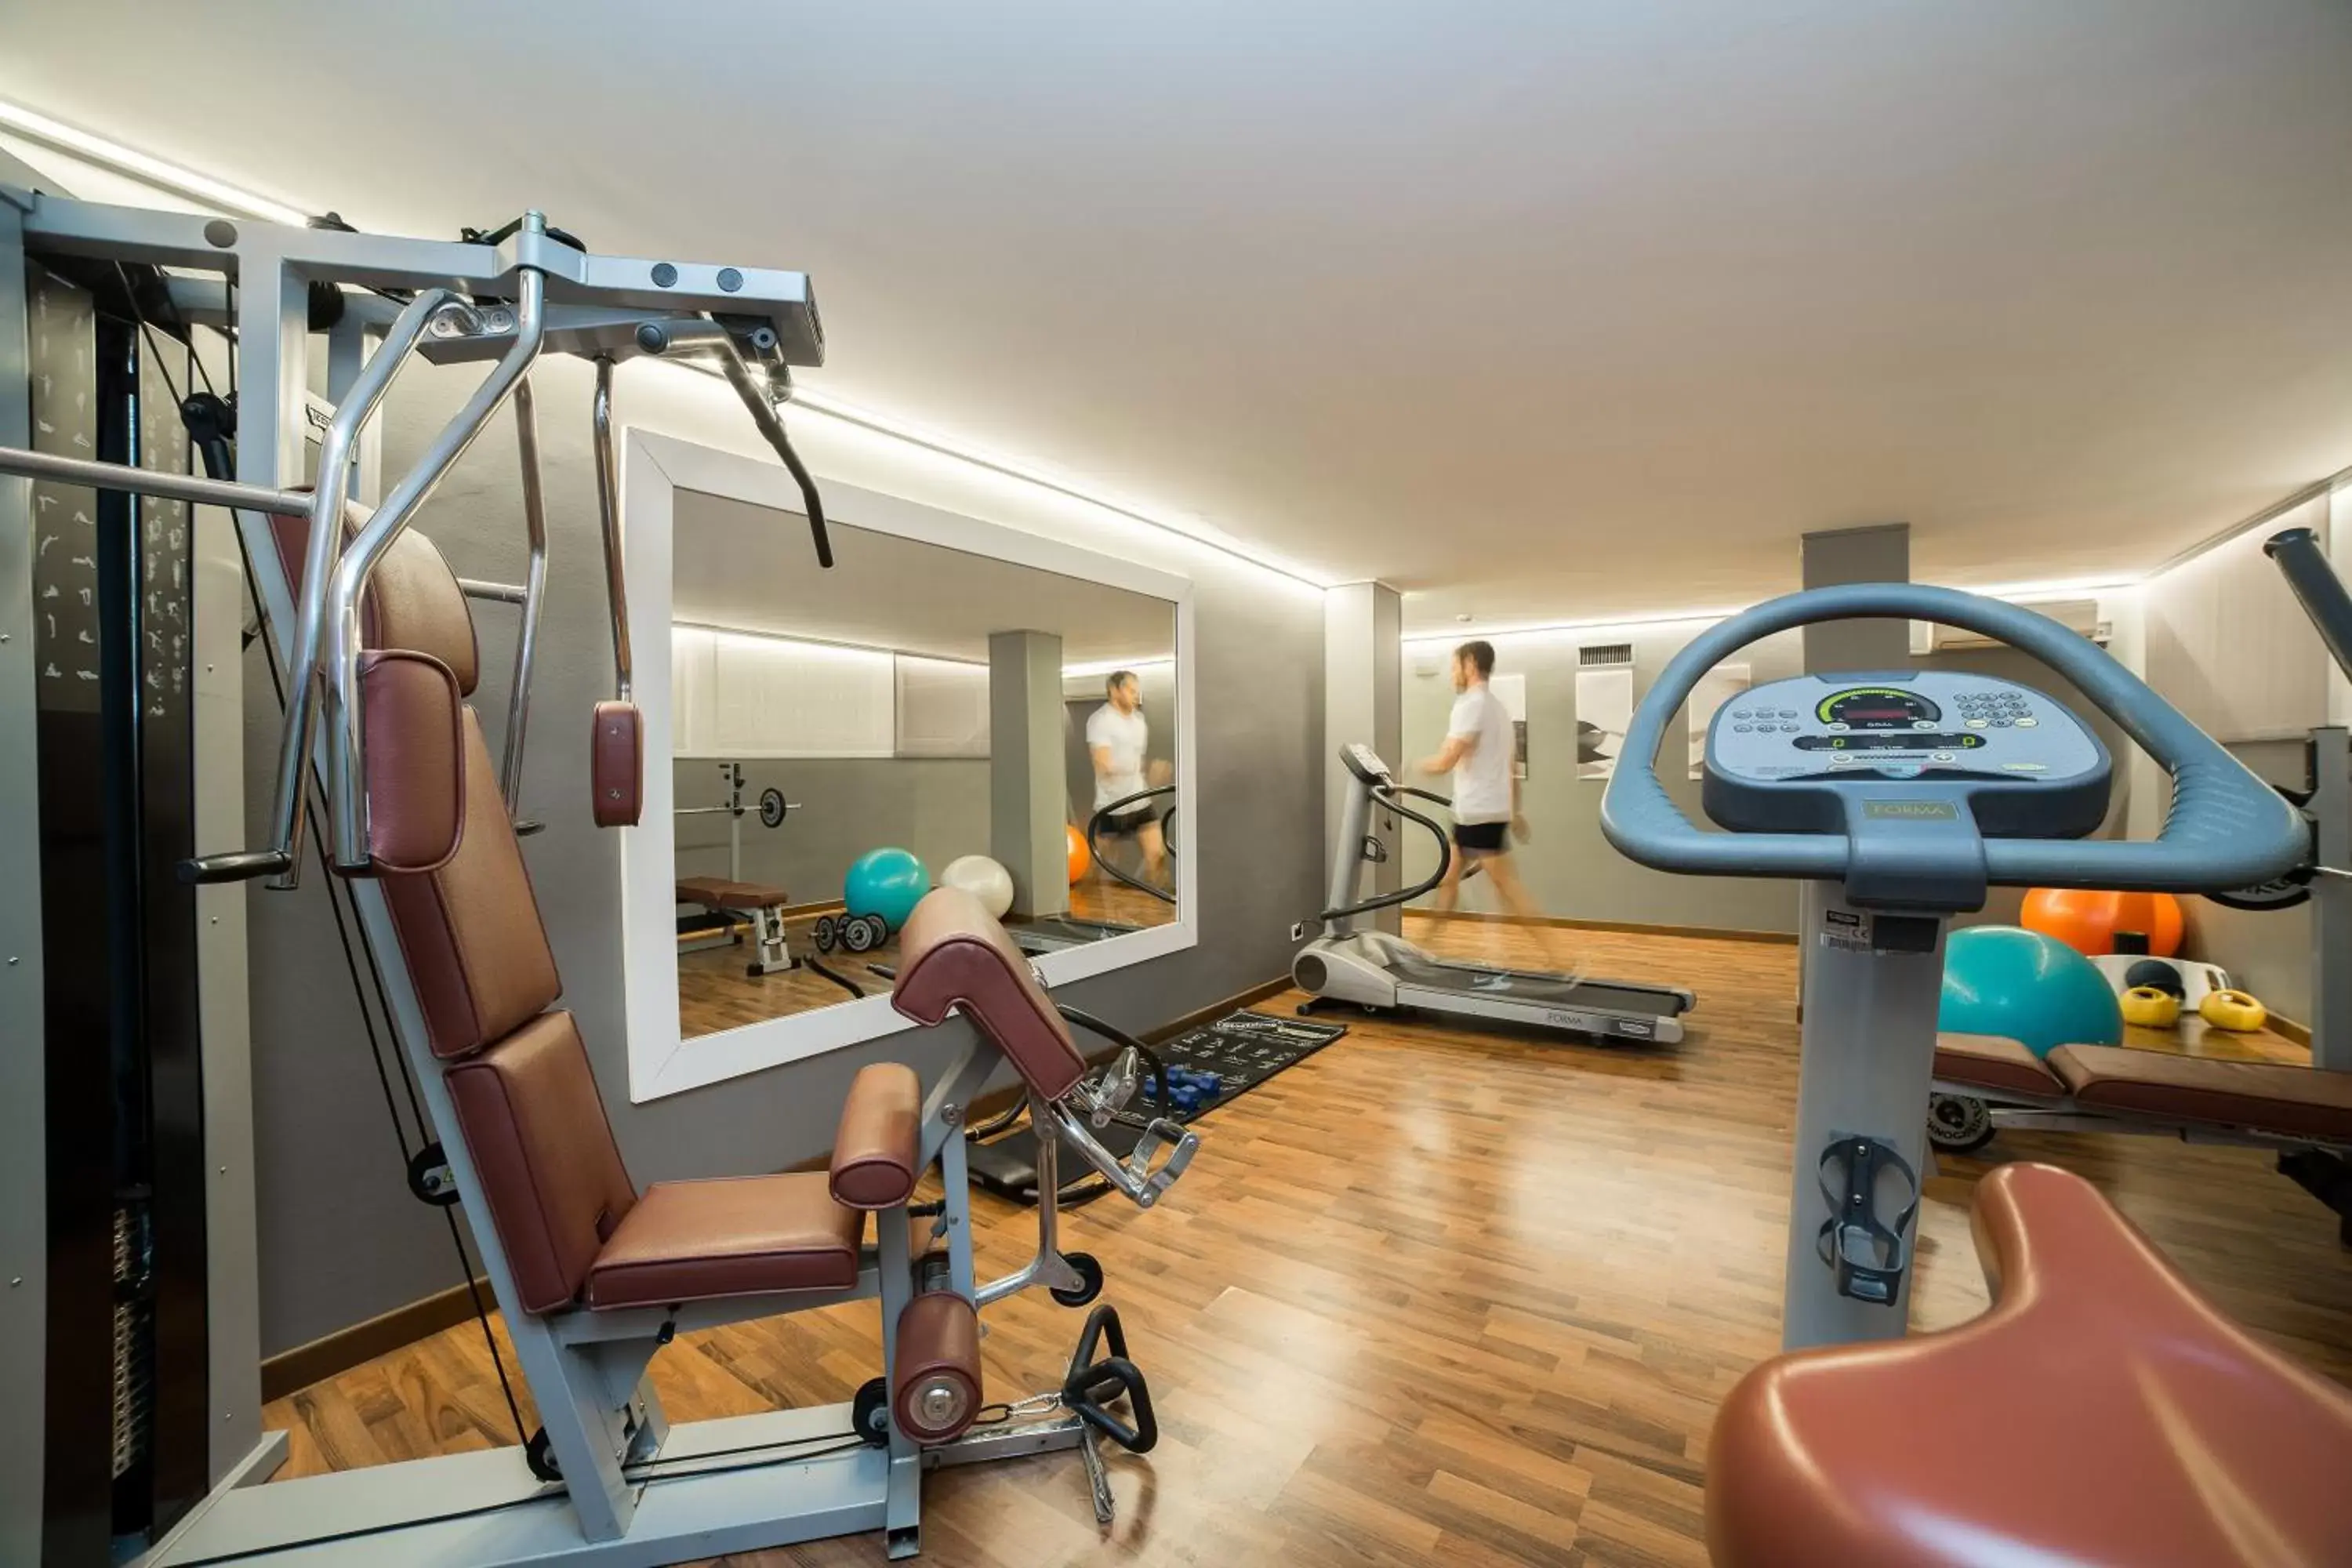 Fitness centre/facilities, Fitness Center/Facilities in Hotel Terme Delle Nazioni